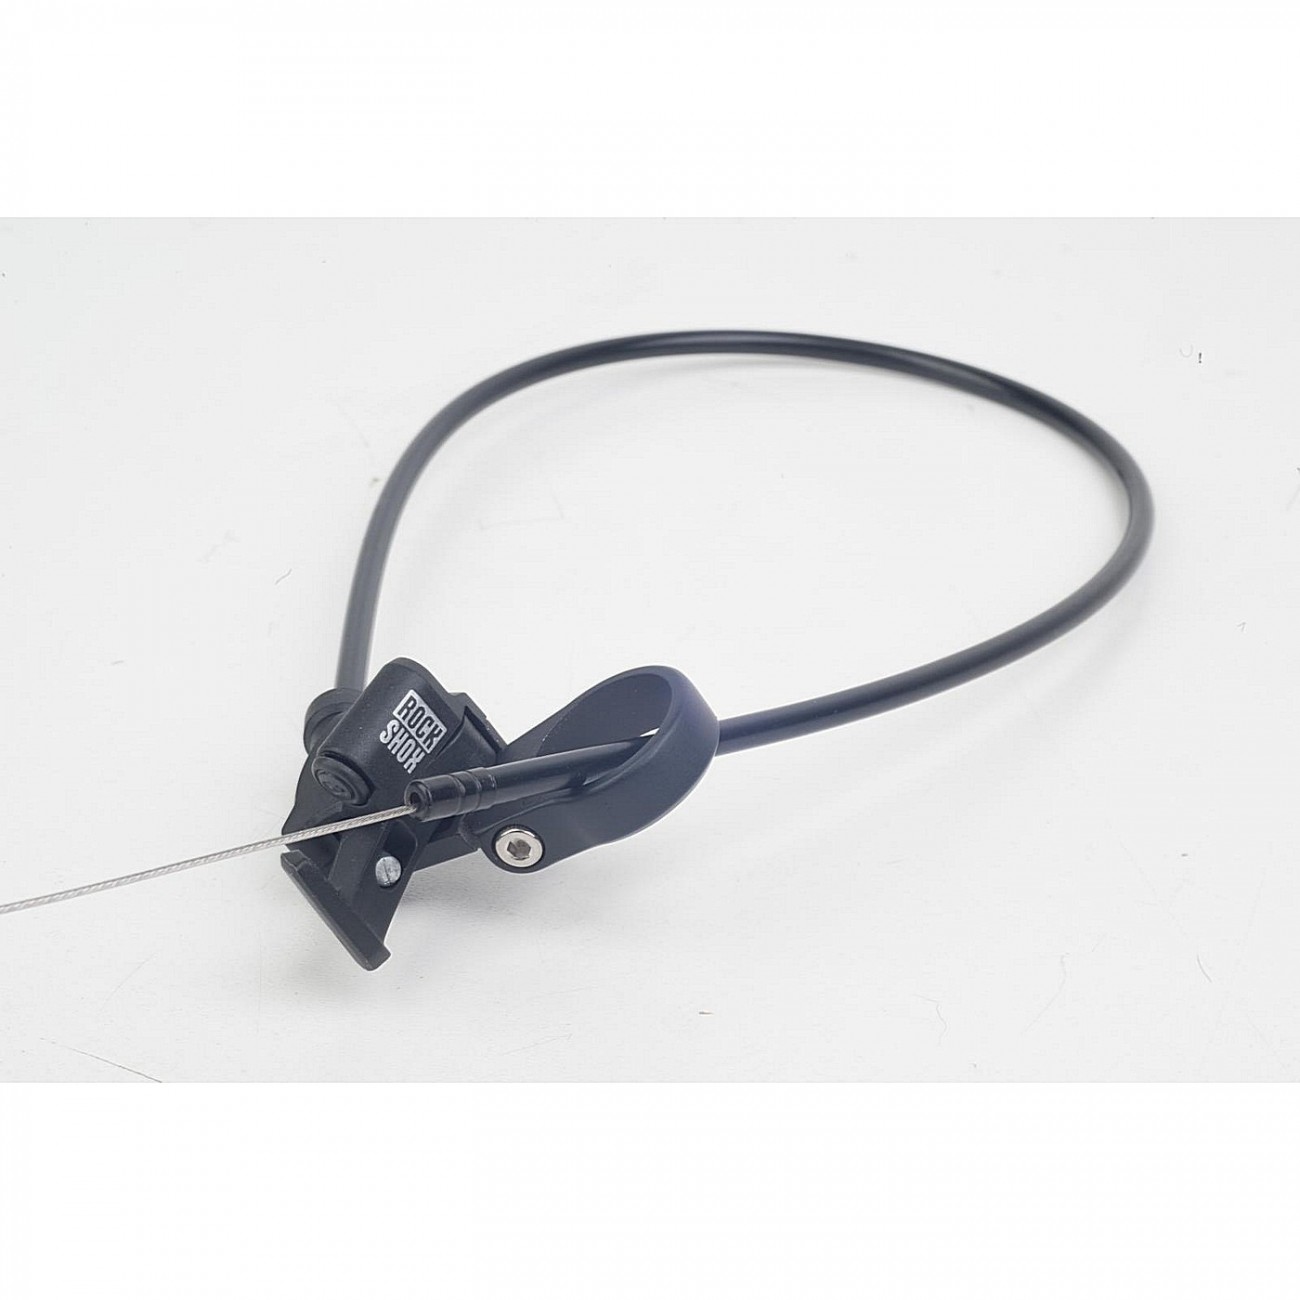 Control remoto - poploc izquierdo (tirador de cable de 17 mm no compatible con moco 2013+) - 1